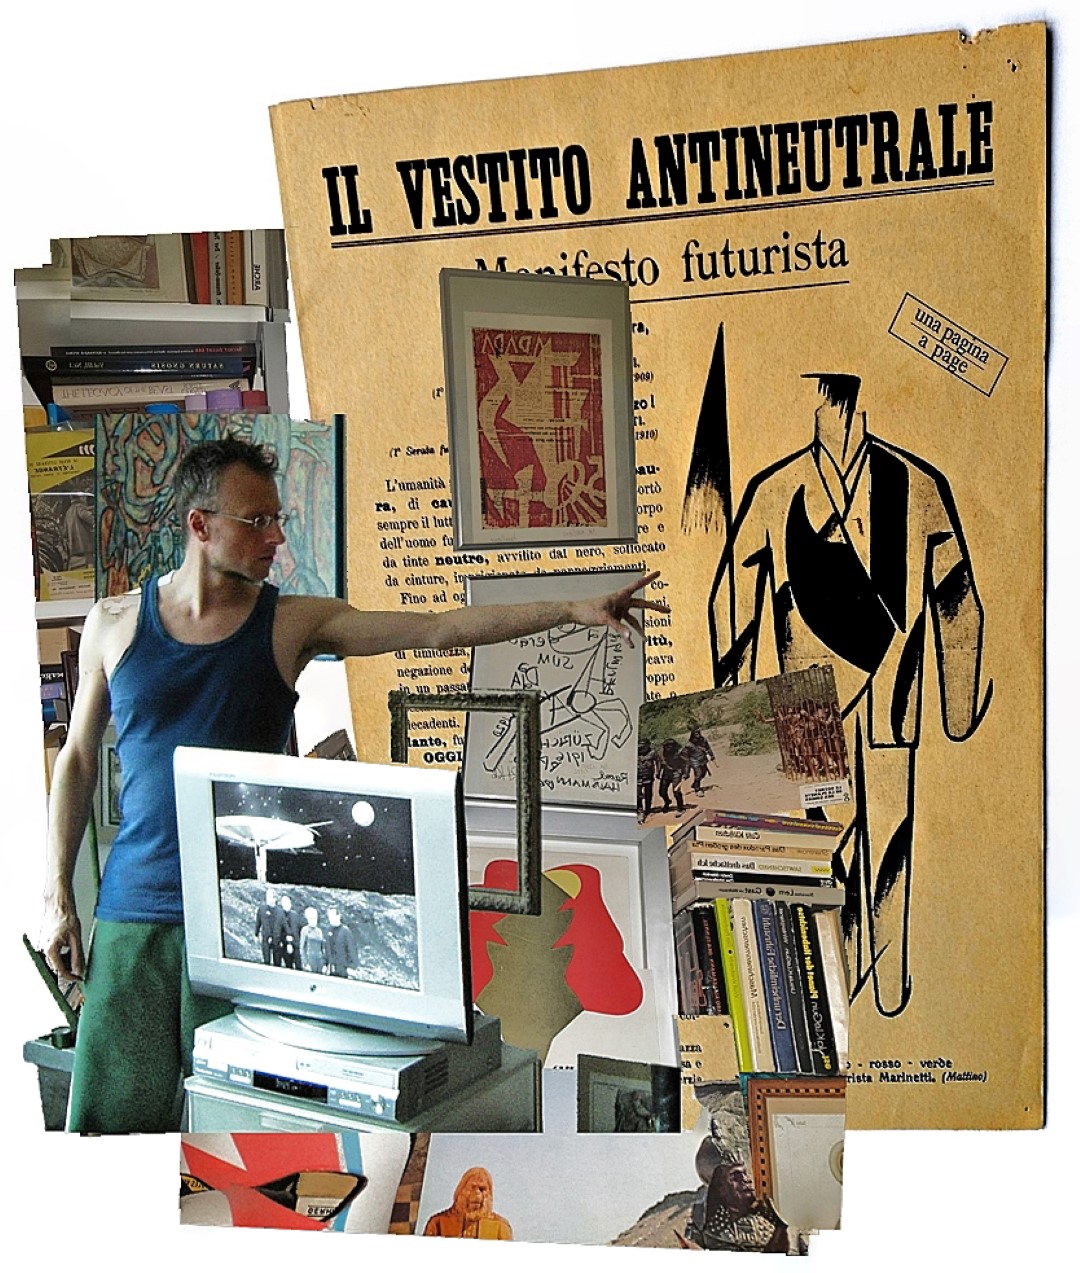 Il vestito antineutrale Manifesto futurista, Giacomo Balla 1914; Marcel Janco, Raoul Hausmann, Dada